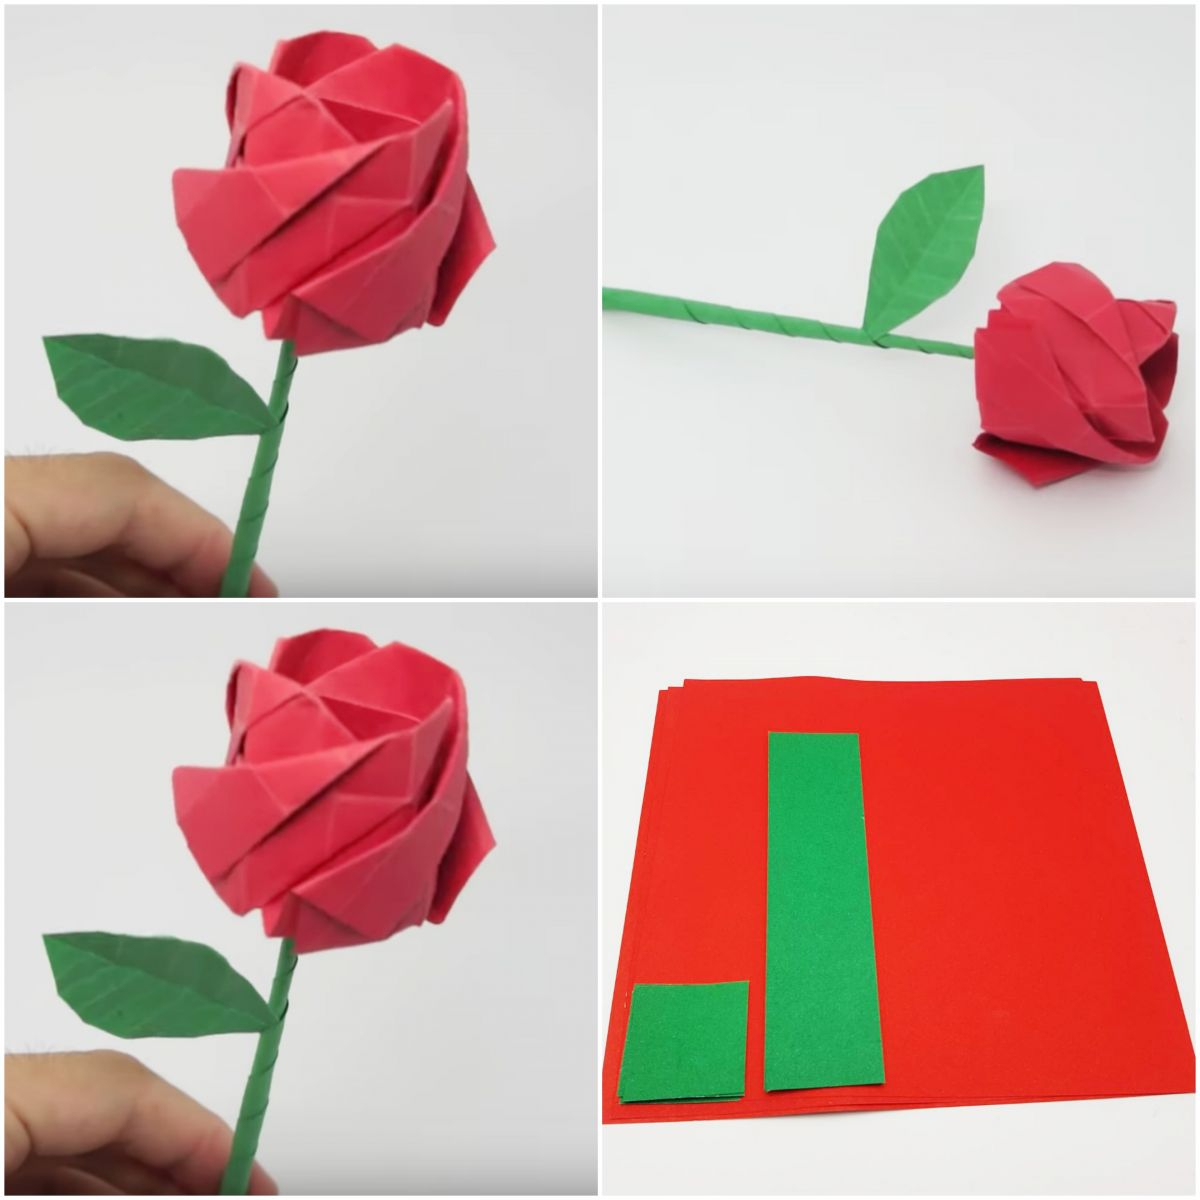 Origami Flower Stem Origami Rose Origami Paper Sheets Paper Pack For Folding Rose Origami Paper Valentine